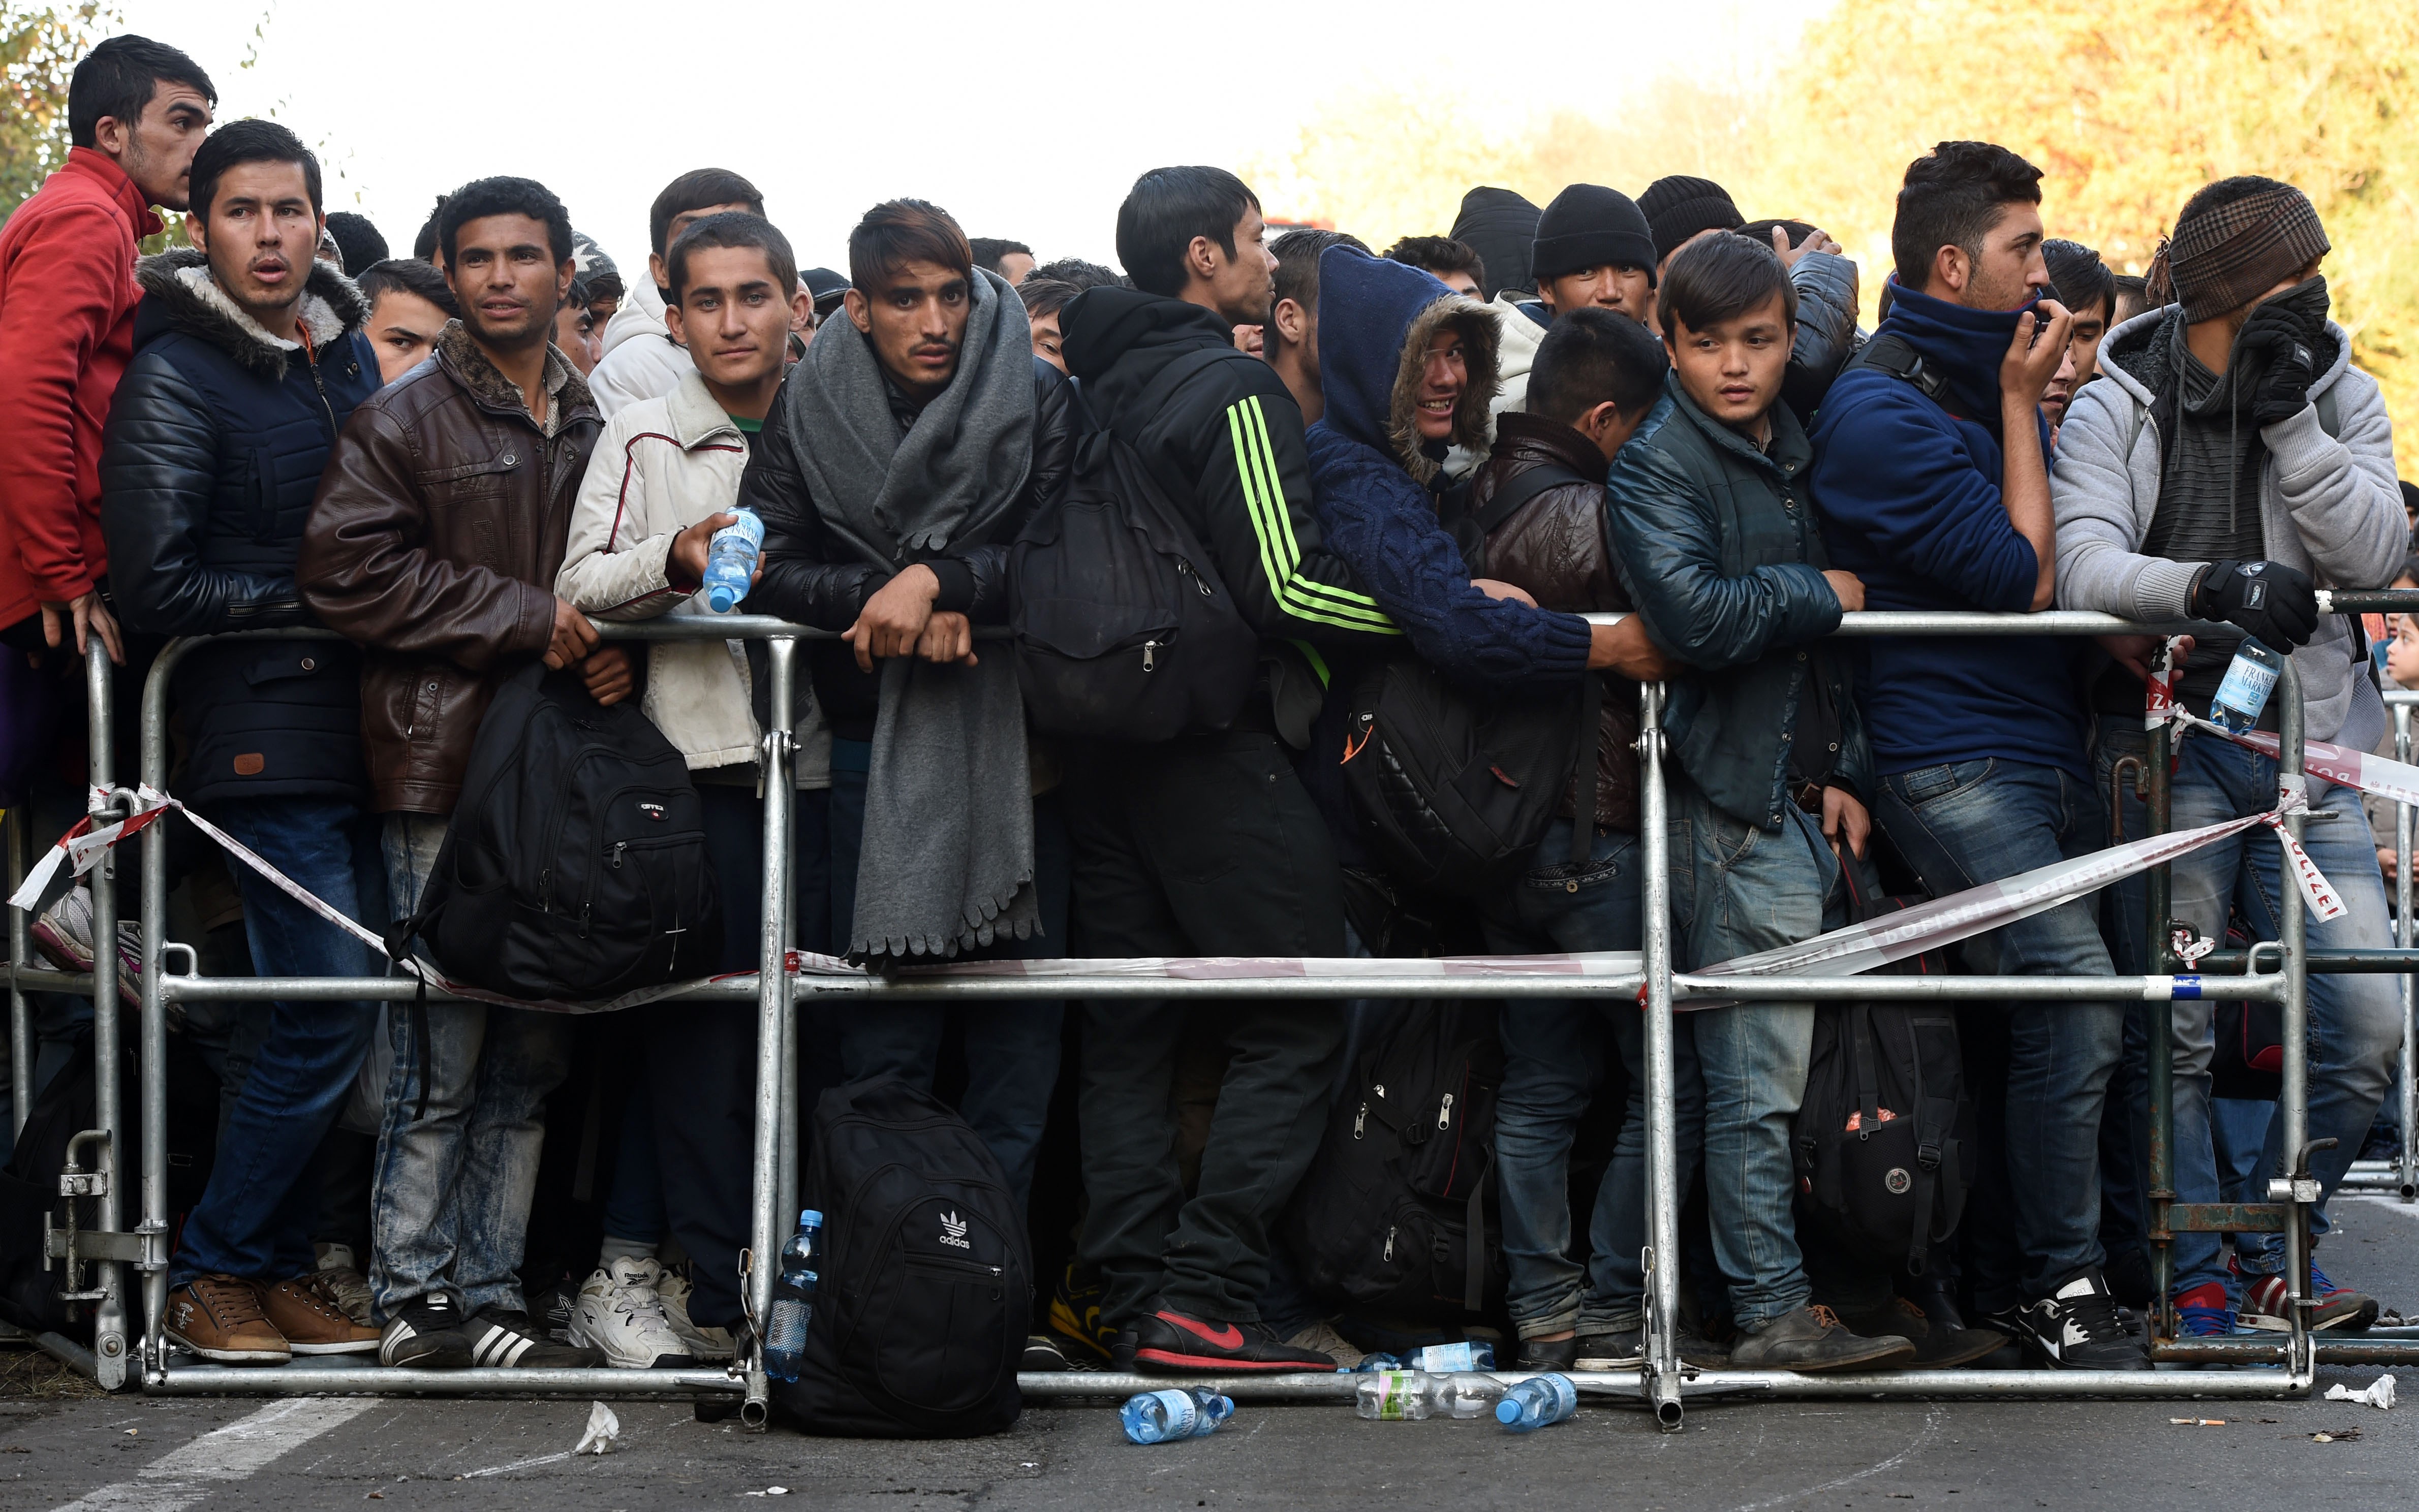 GdP: „Es handelt sich bei vielen kontrollierten jungen Männer um Flüchtlinge aus Syrien, dem Irak und Afghanistan“